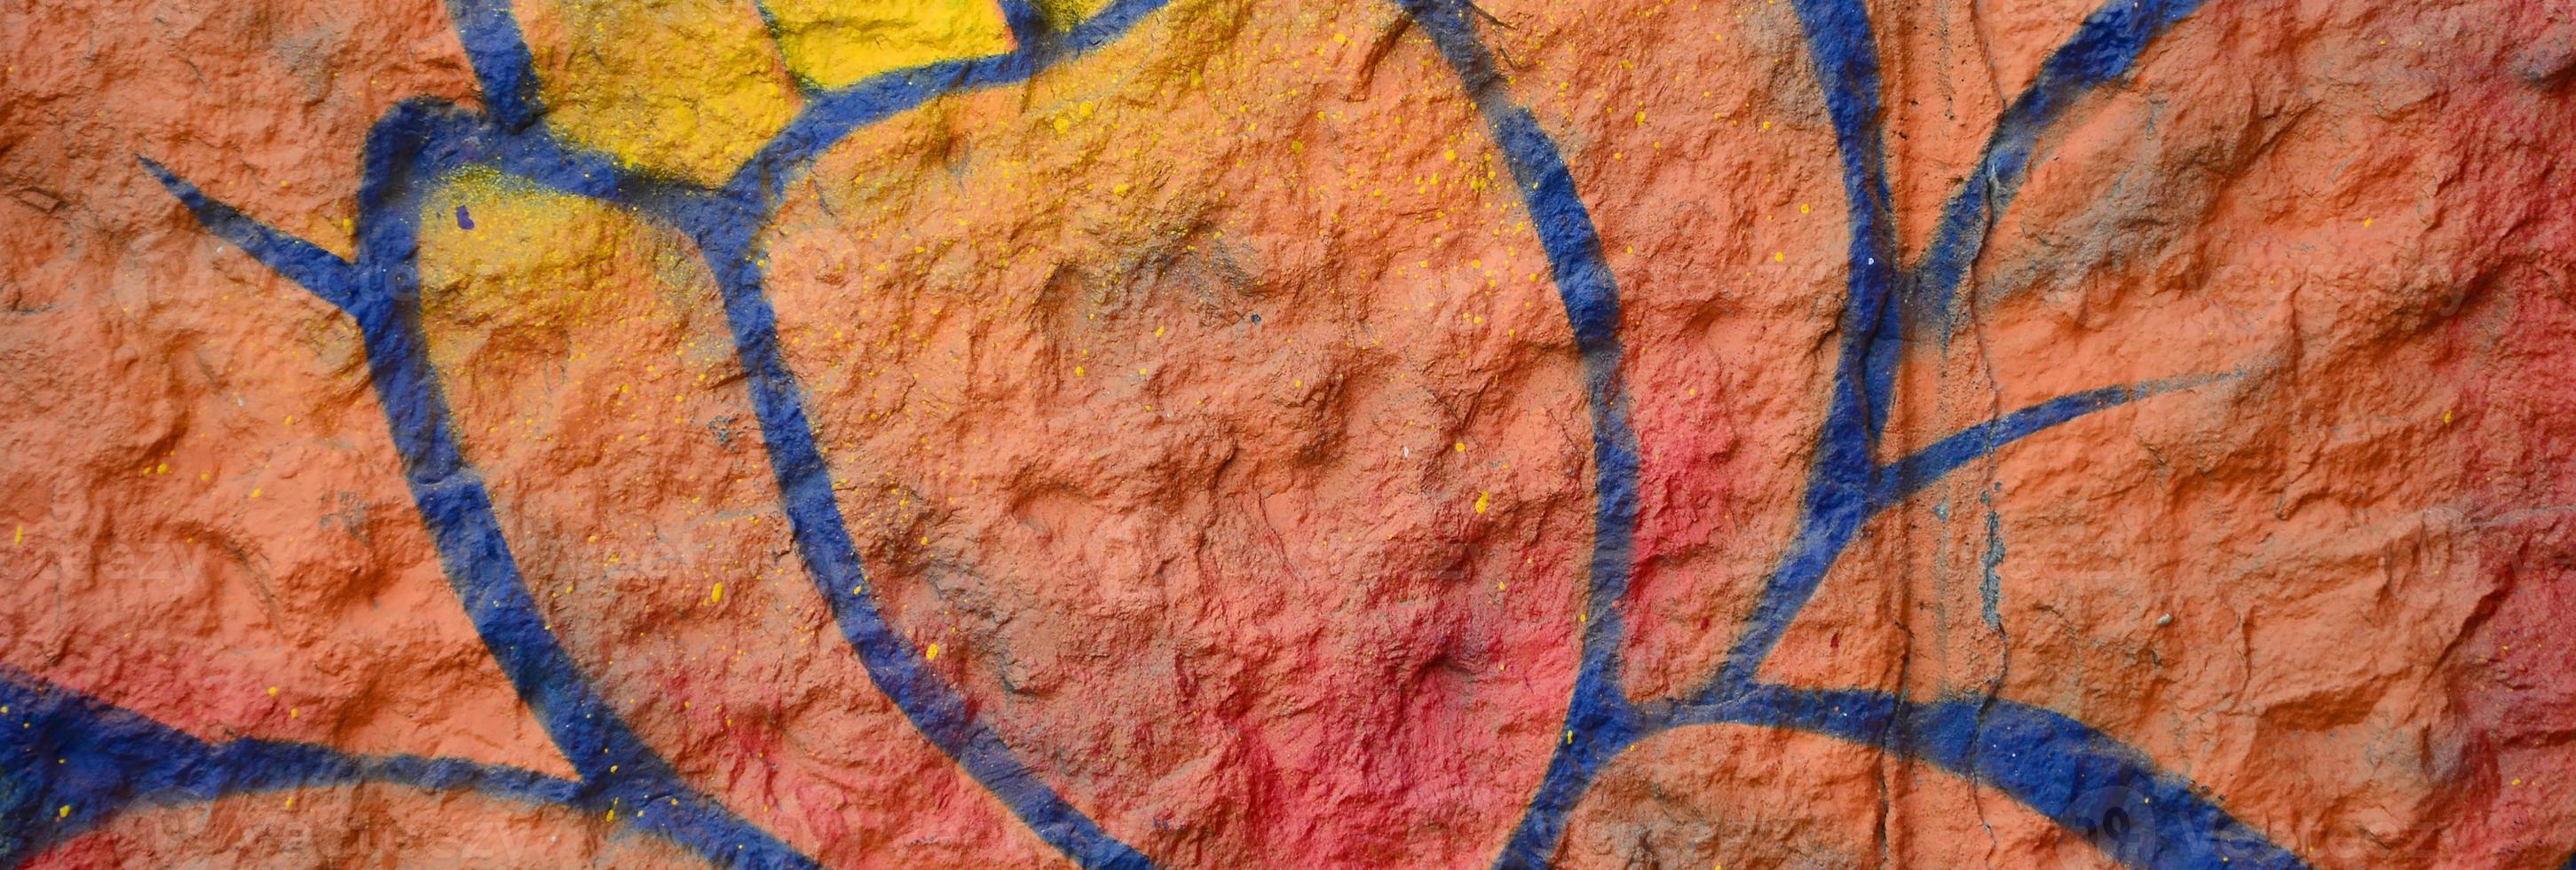 fragment av graffiti ritningar. de gammal vägg dekorerad med måla fläckar i de stil av gata konst kultur. orange blomma foto